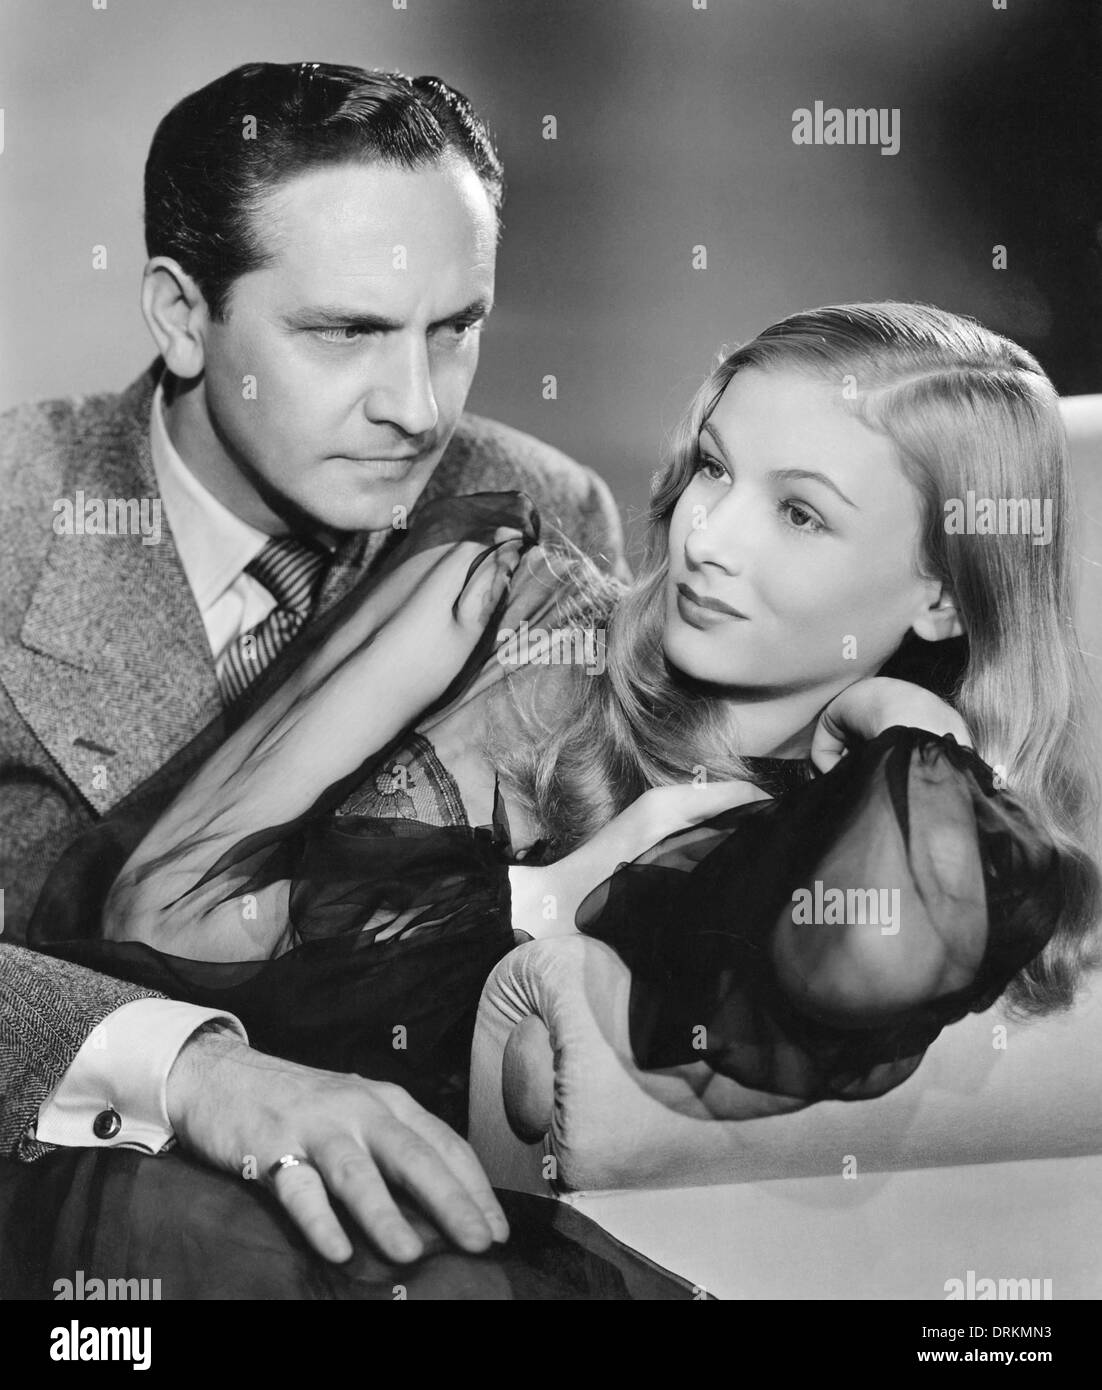 J'ai épousé une sorcière 1942 Paramount Pictures film avec Veronica Lake et Frédéric Mars, réalisé par René Clair Banque D'Images